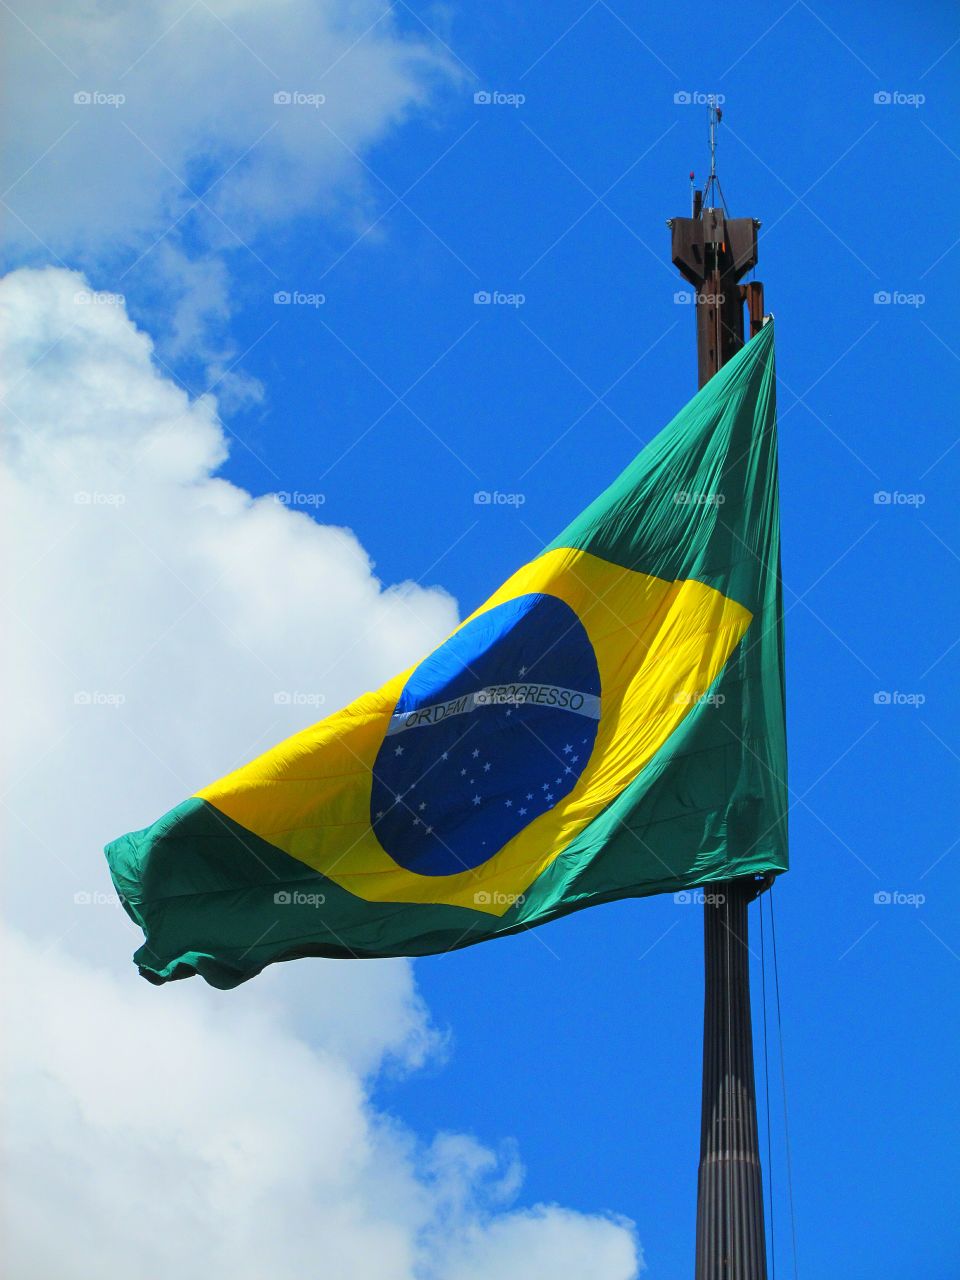 bandeira do Brasil - gigantesca